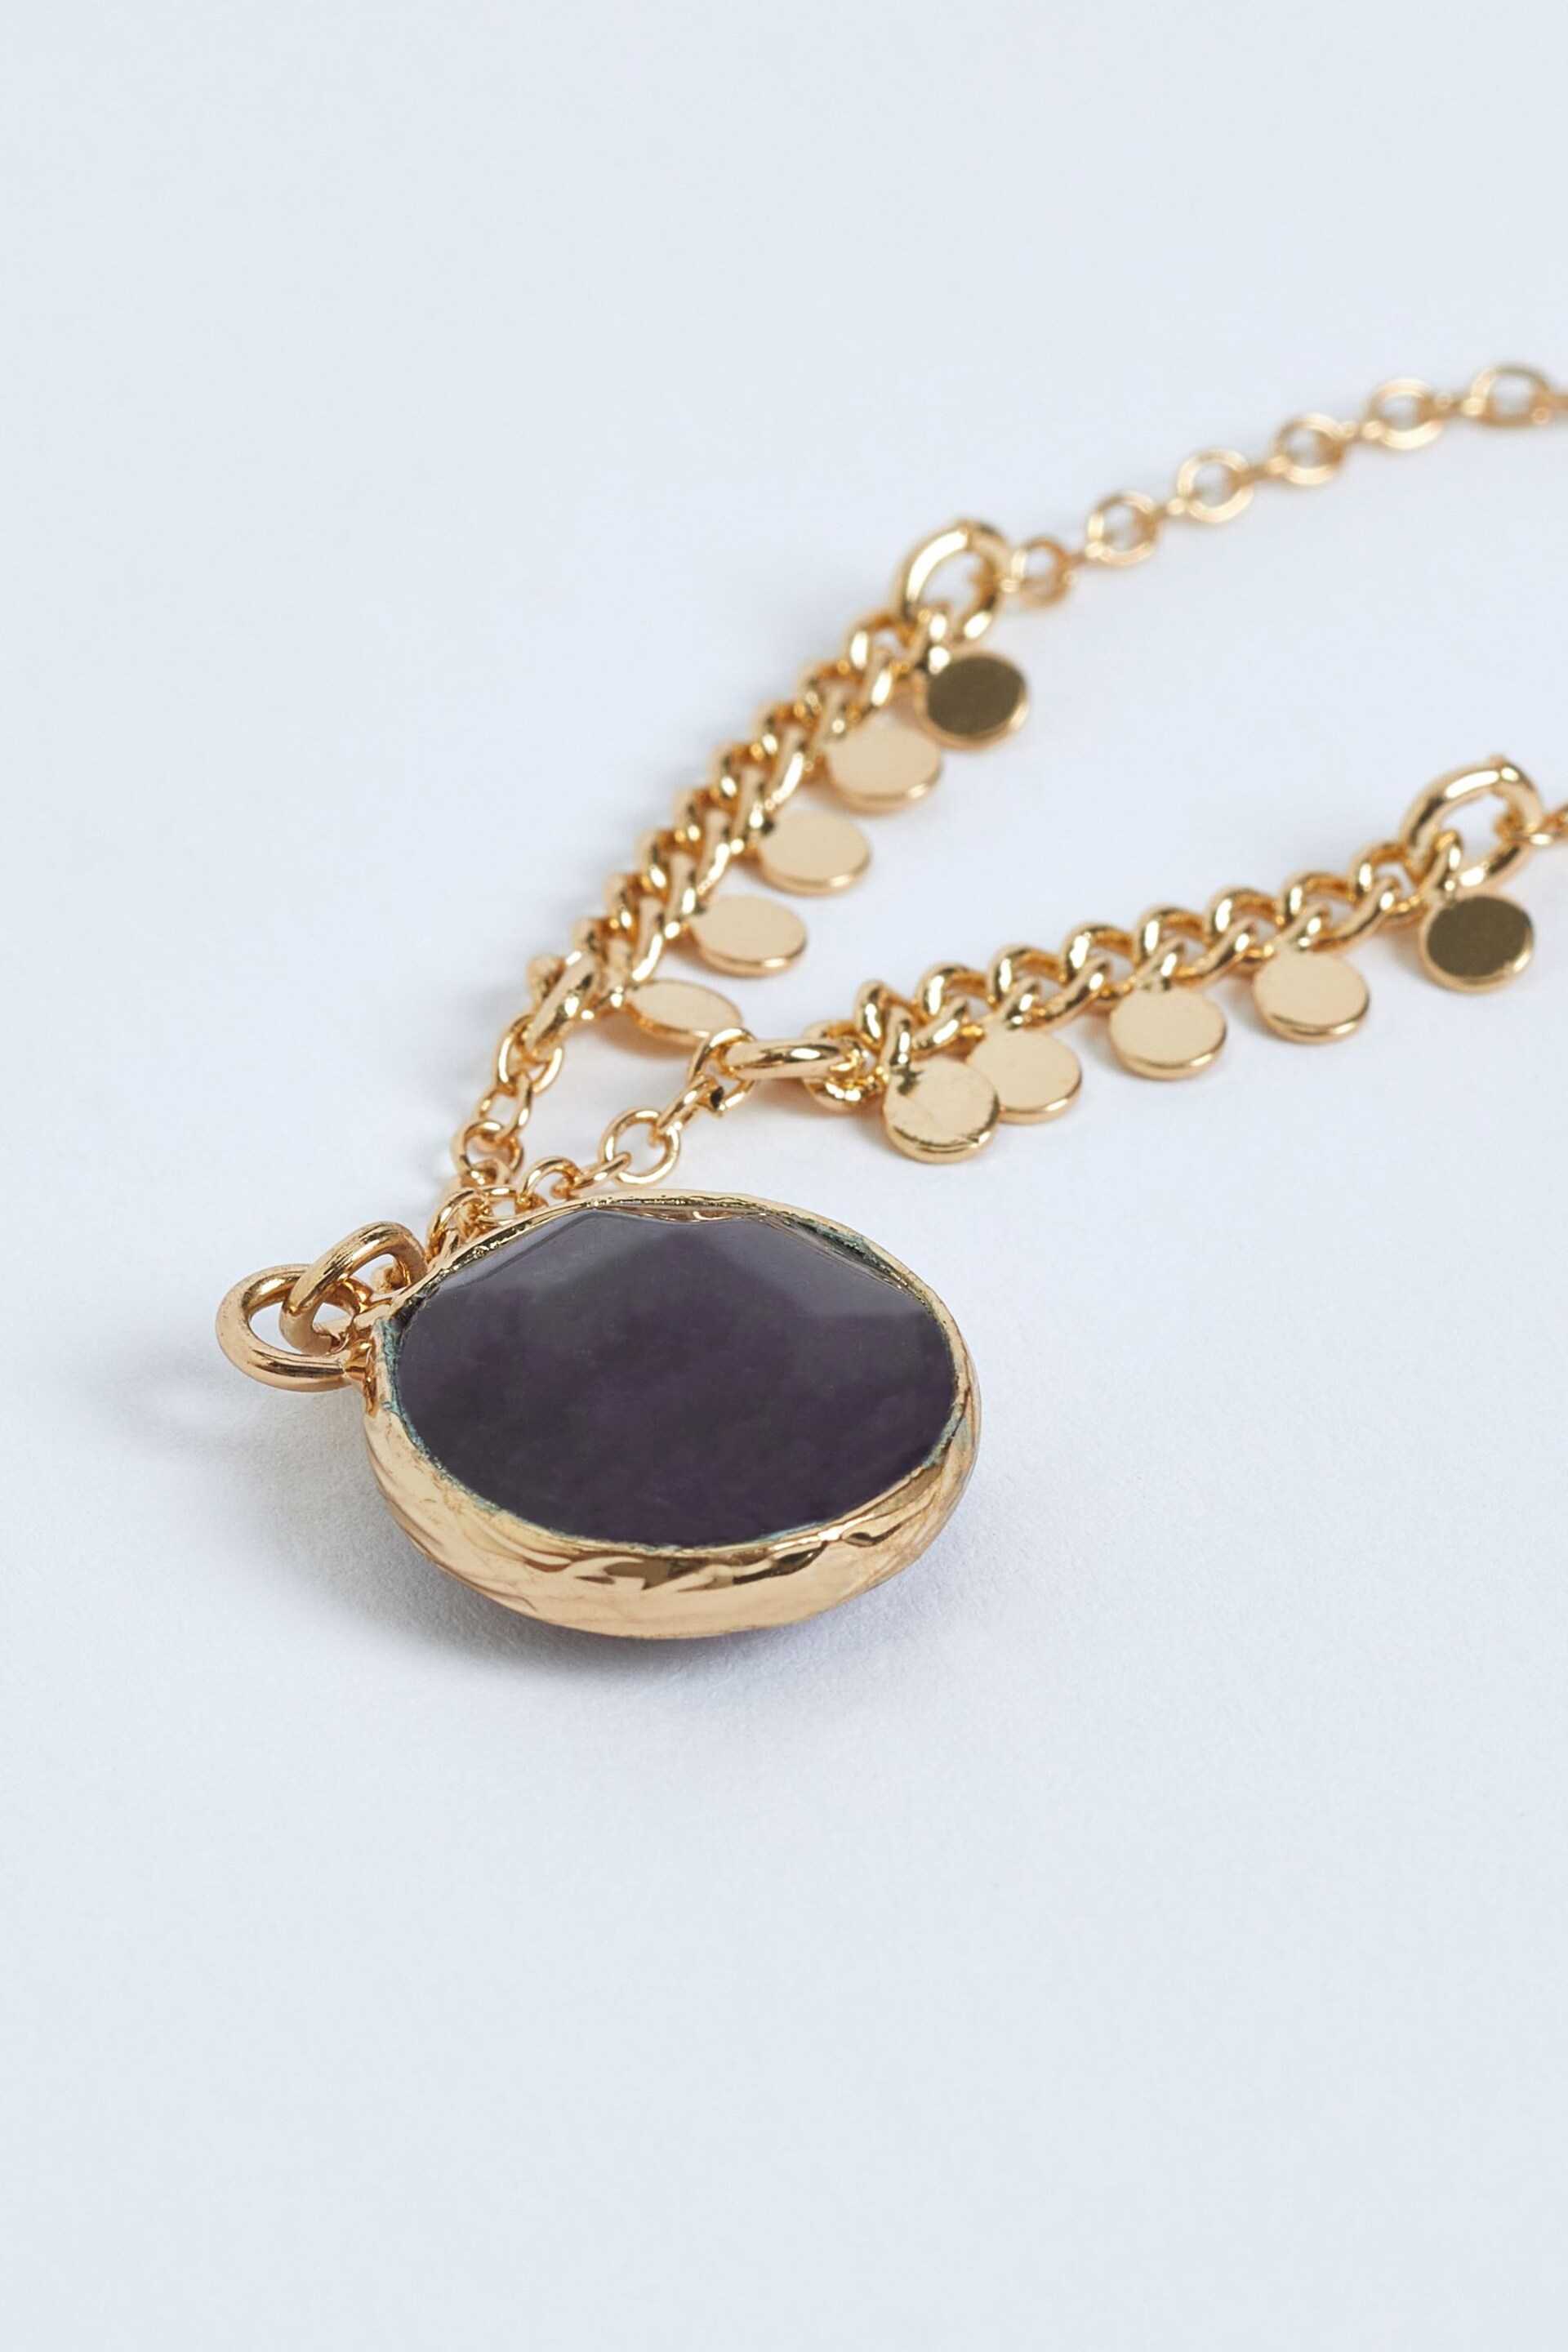 Gold Tone Semi-Precious Stone Necklace - Image 4 of 4